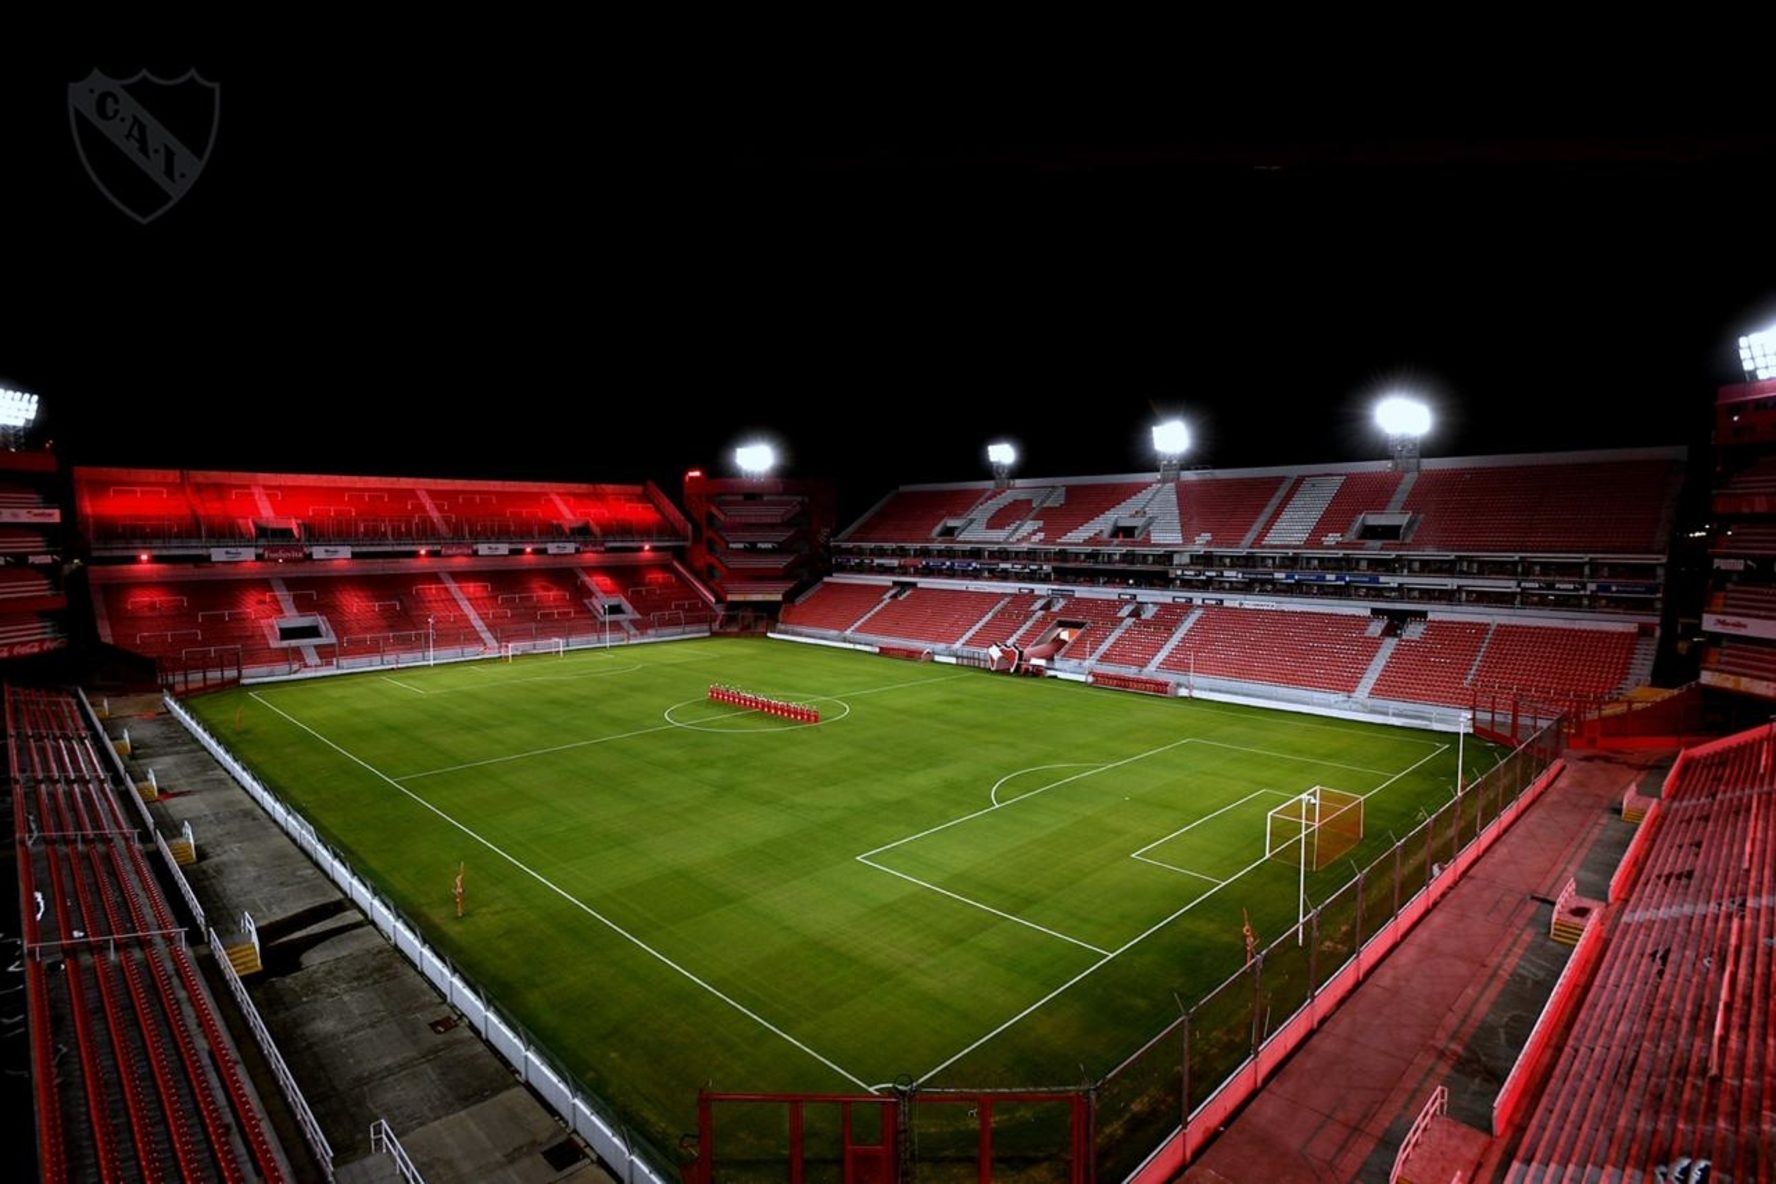 El Libertadores de América estrenó nuevas luces. La cancha de Independiente podría ser utilizada por River para la Copa